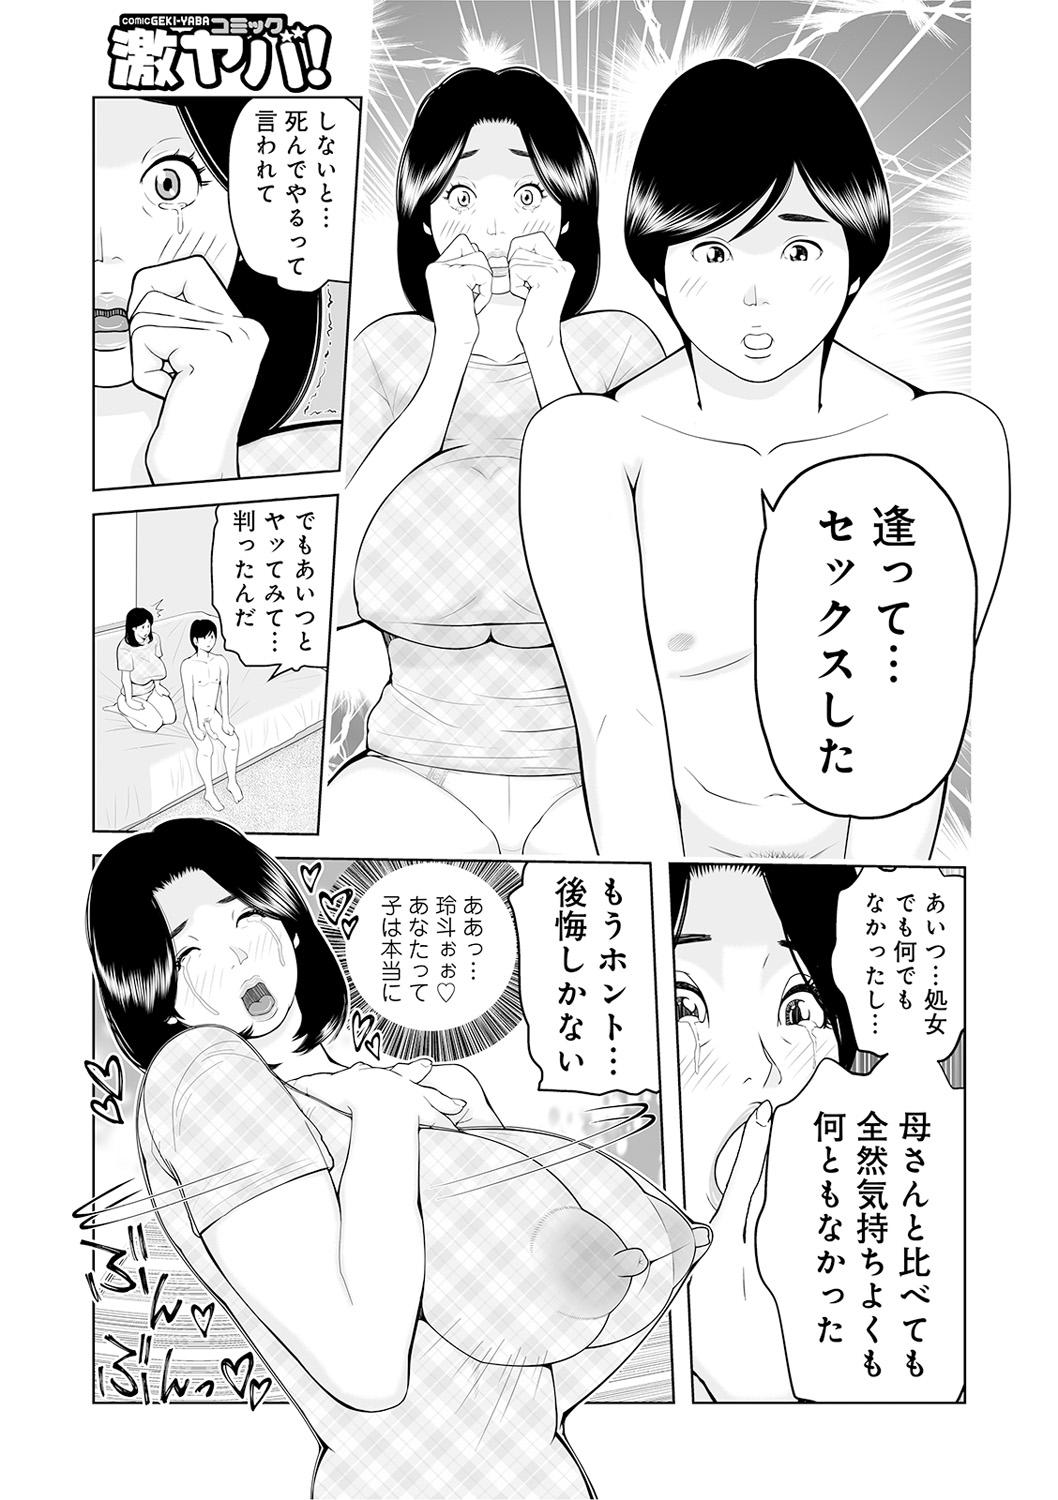 Oba-san Dashite mo ii? Vol. 02 92